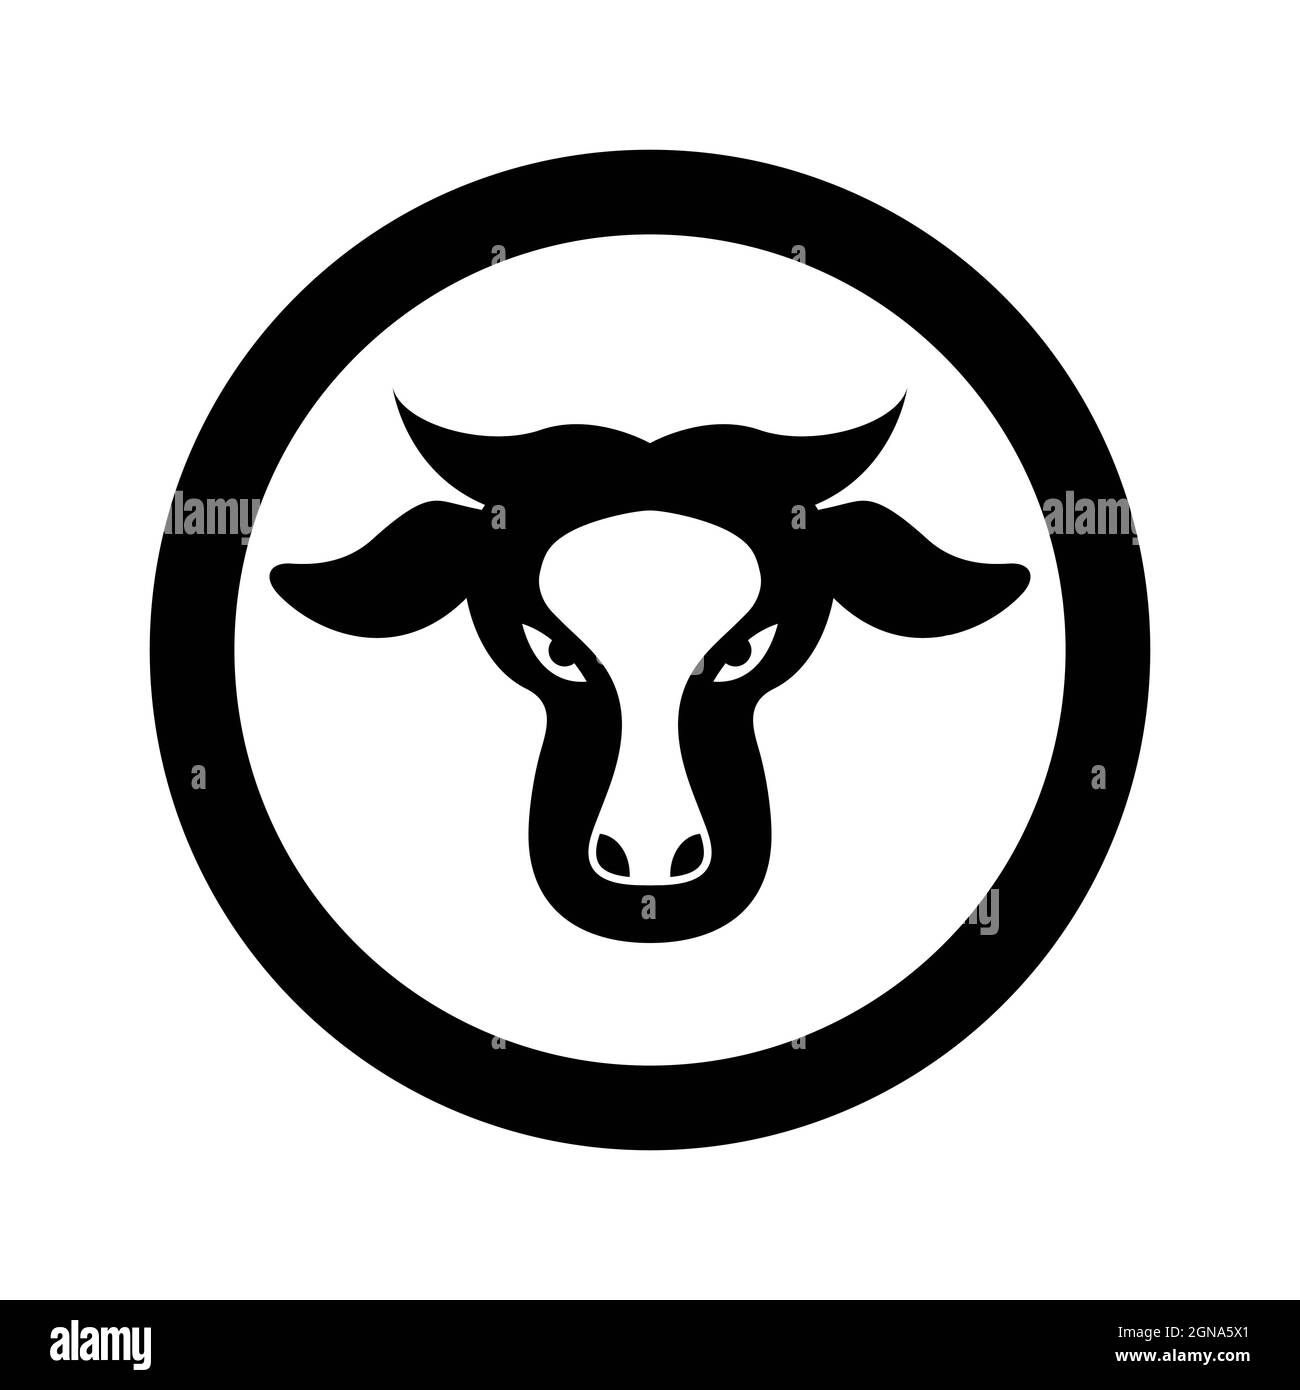 Cow logo template vector icon design Stock Photo